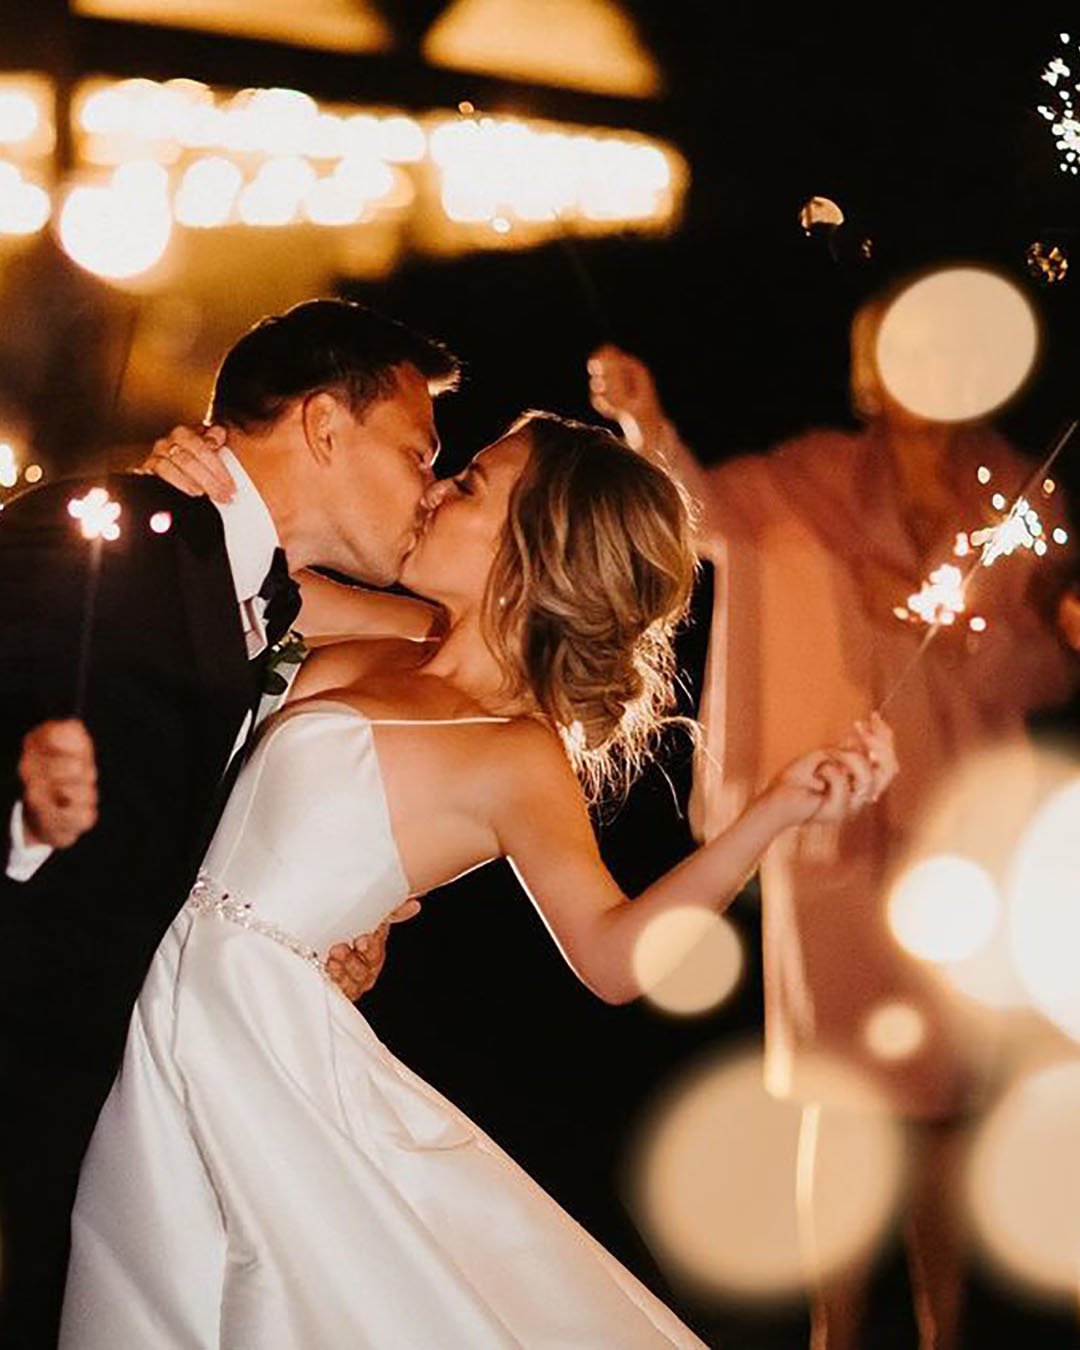 wedding kiss photos night kiss with sparklers sanshinephoto